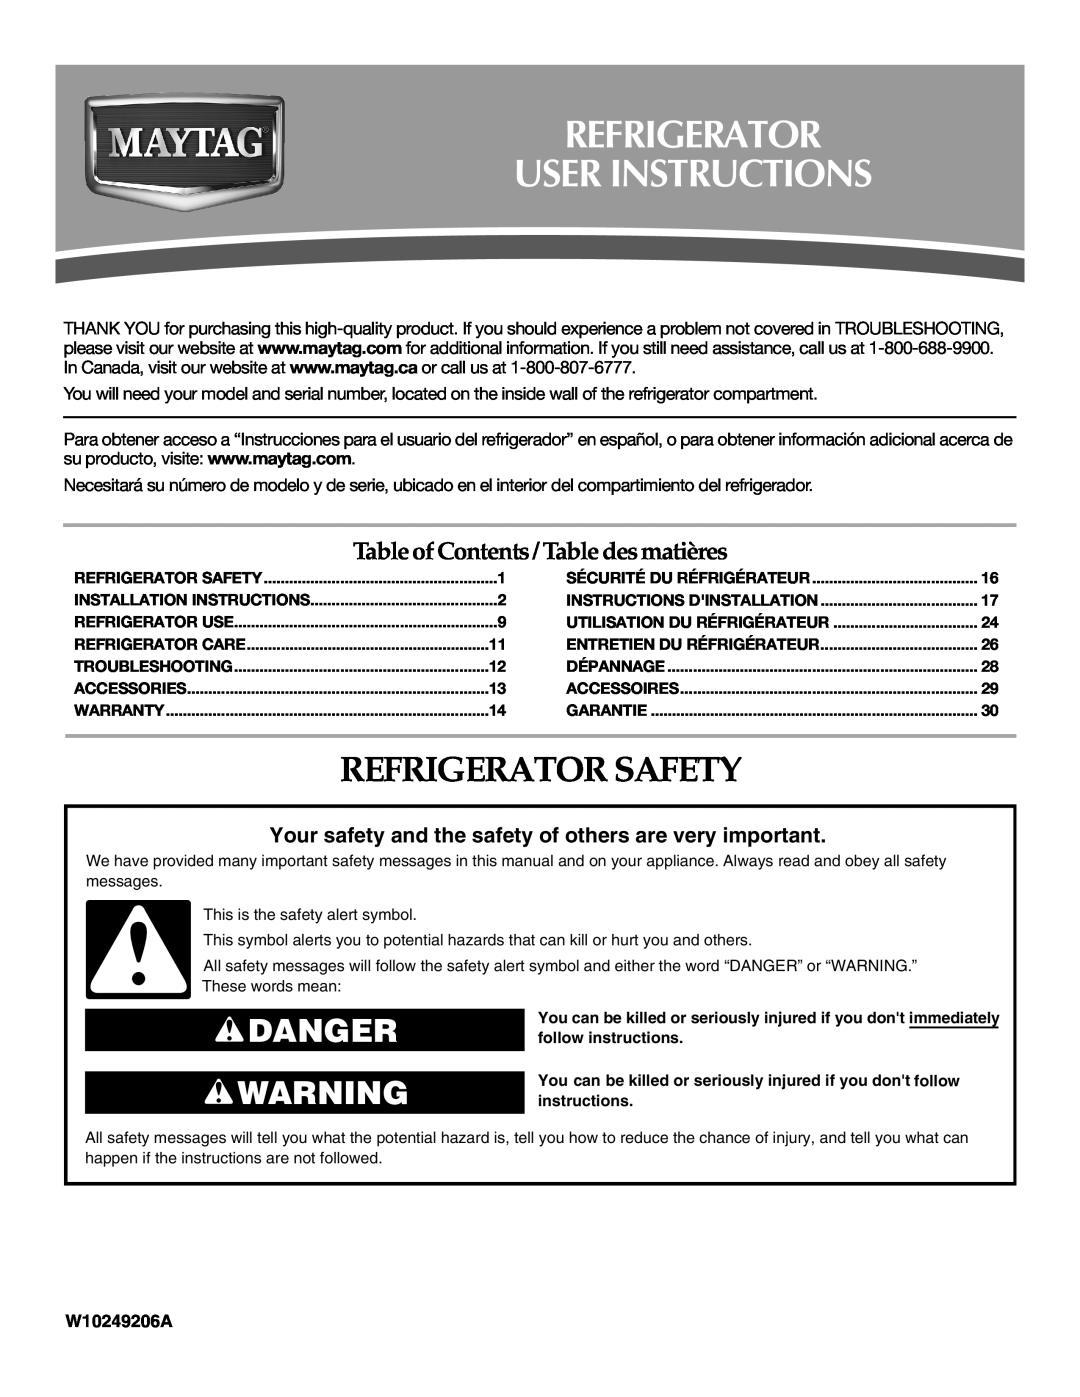 Maytag W10249207A installation instructions Refrigerator User Instructions, Refrigerator Safety, Danger, W10249206A 